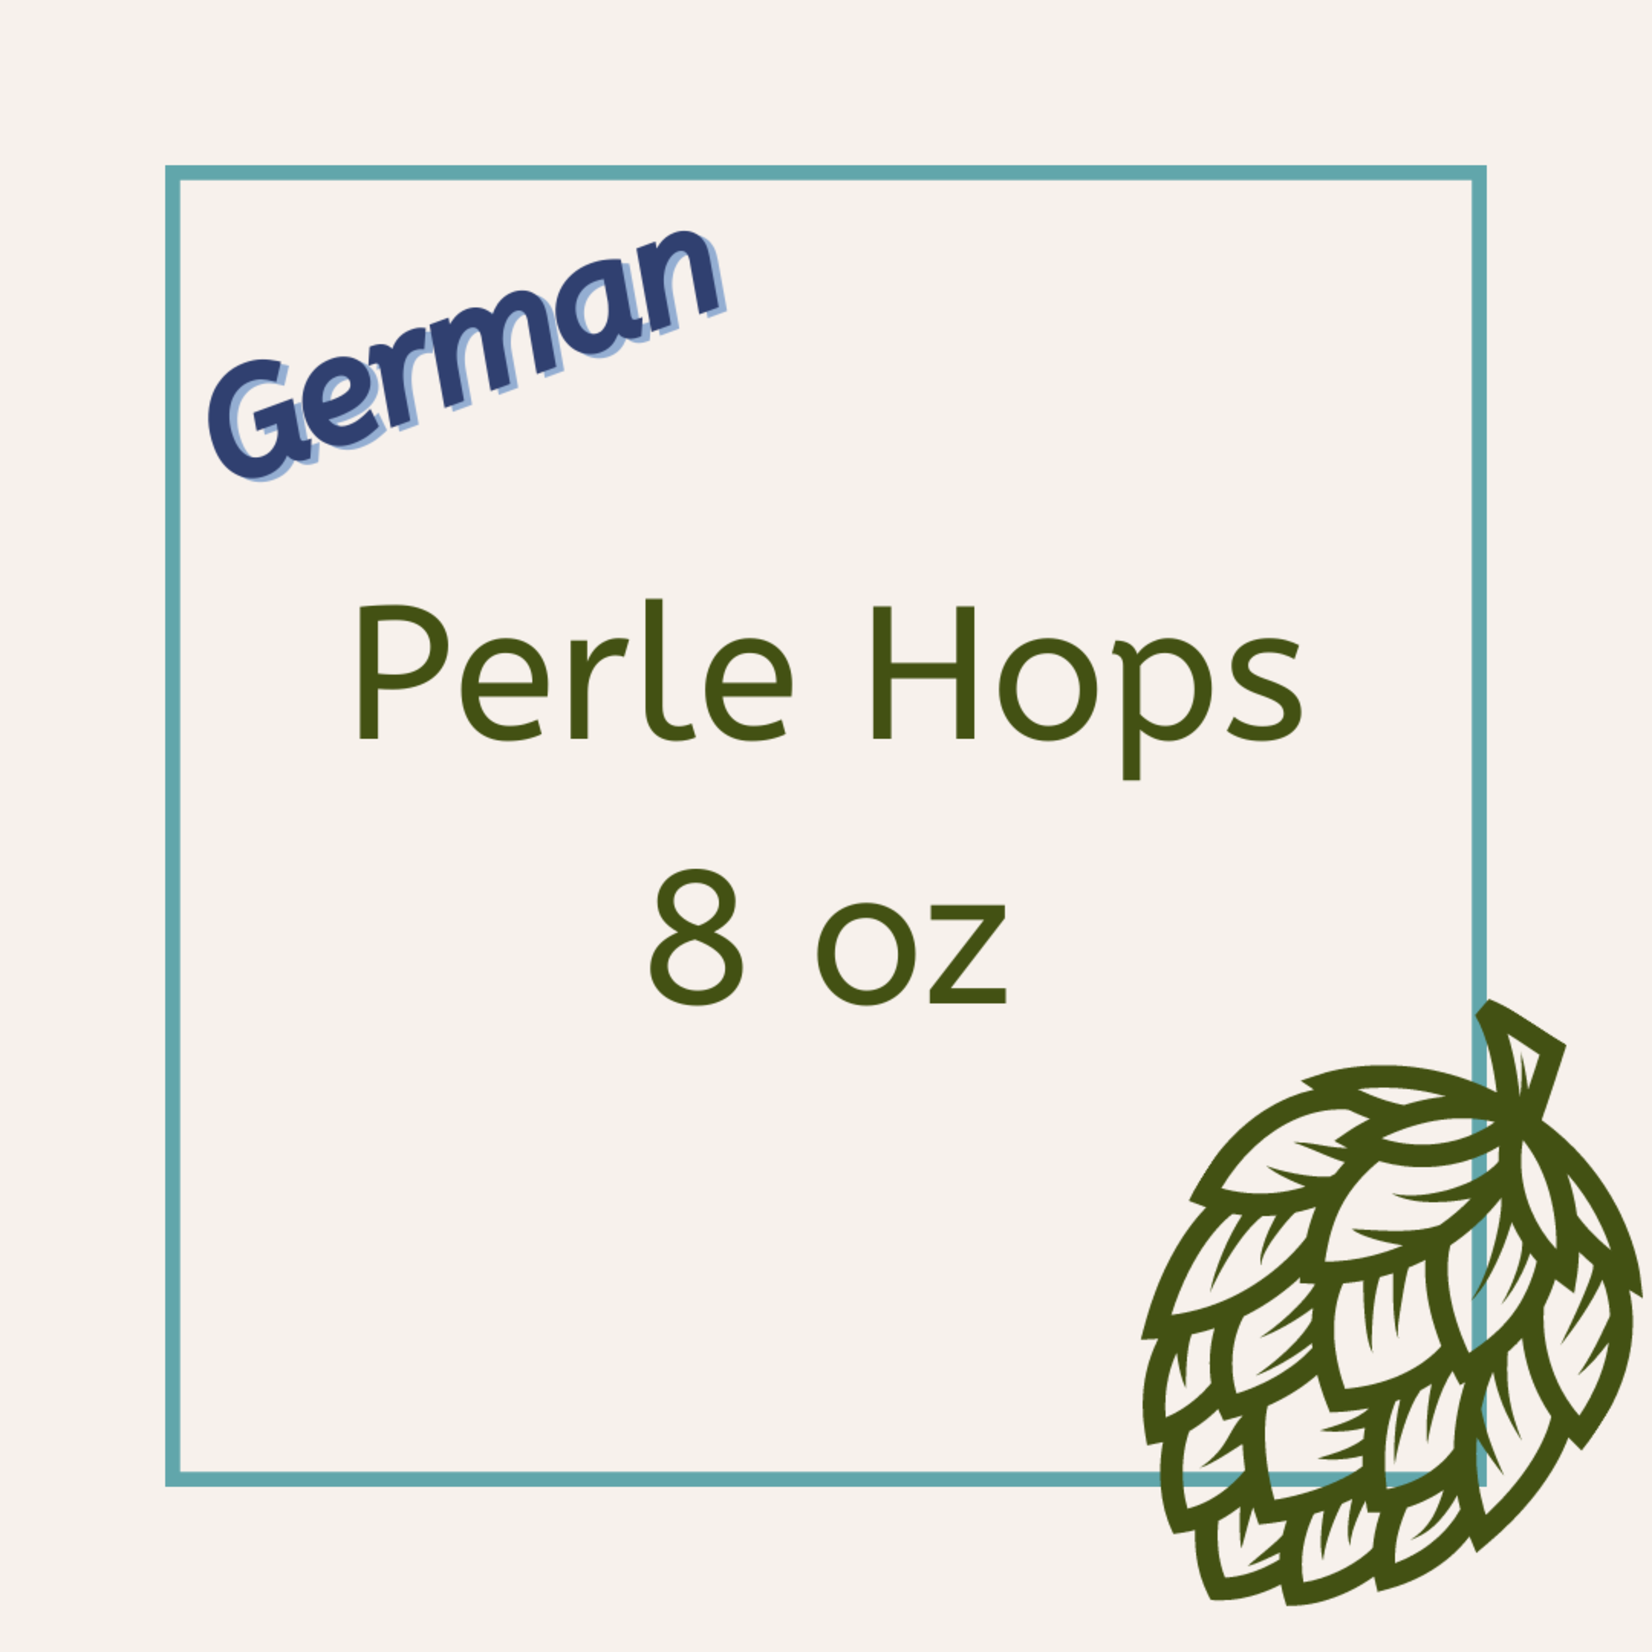 BSG German Perle Hops 8oz